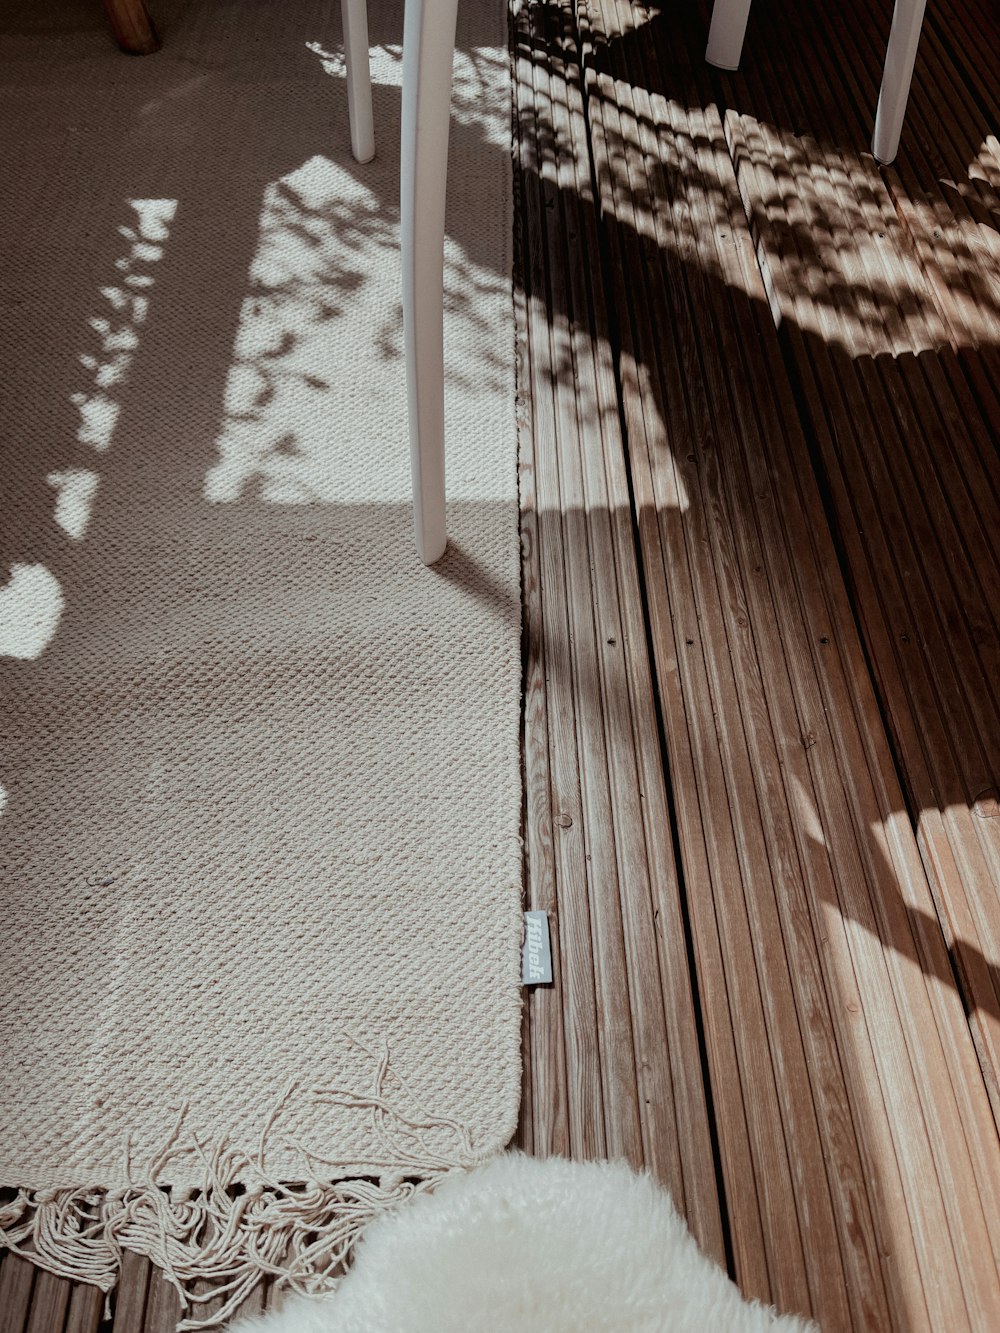 Ombra della persona sul pavimento di legno